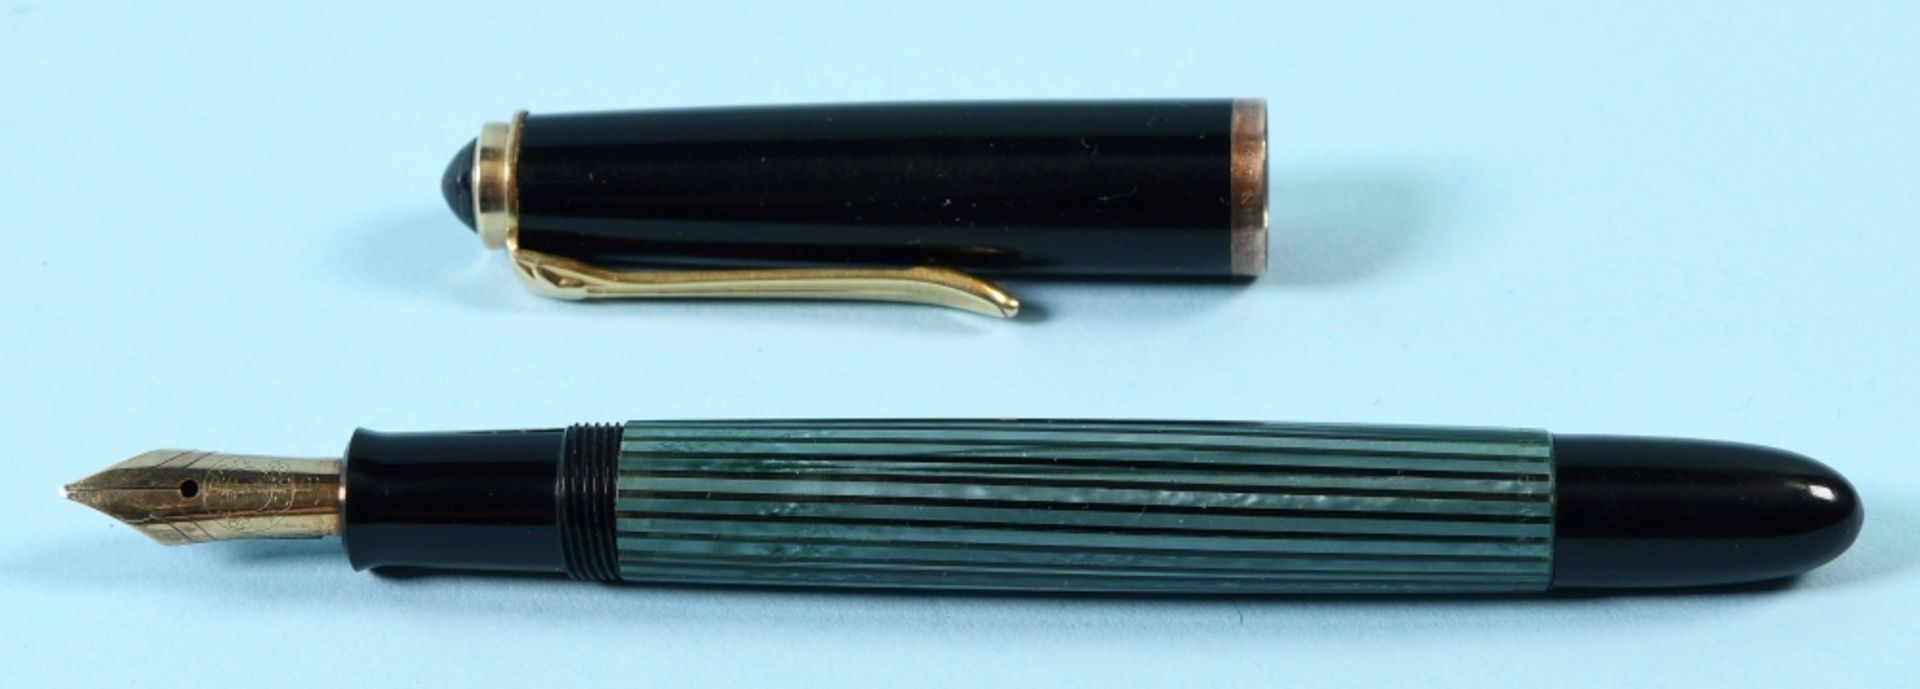 Füllfederhalter, 3 Stück und 1 Kugelschreiber - Image 5 of 8